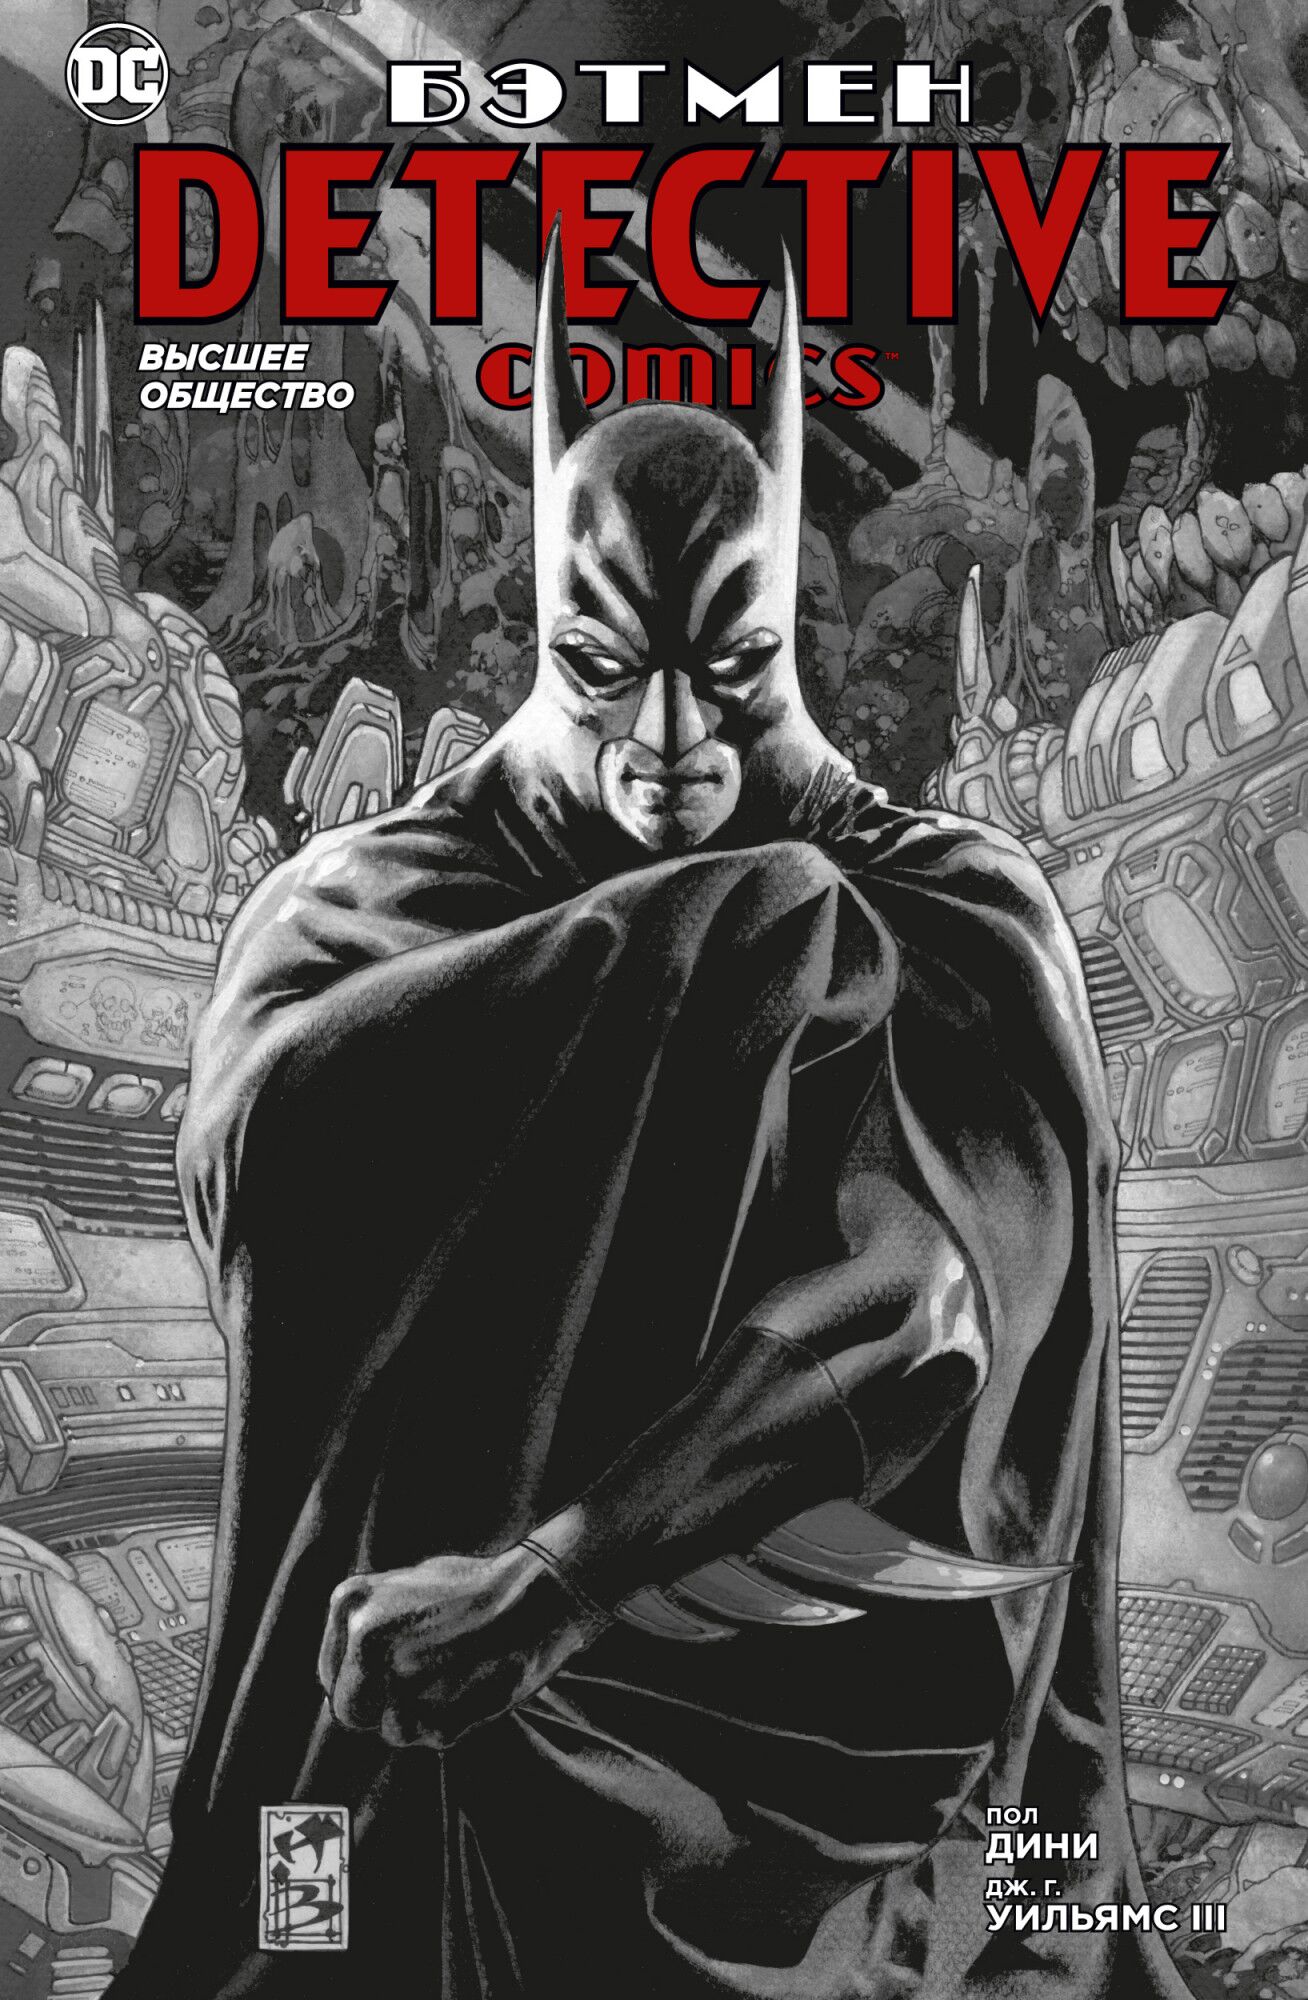 Бэтмен. Detective Comics. Высшее общество - Графические романы. Бэтмен